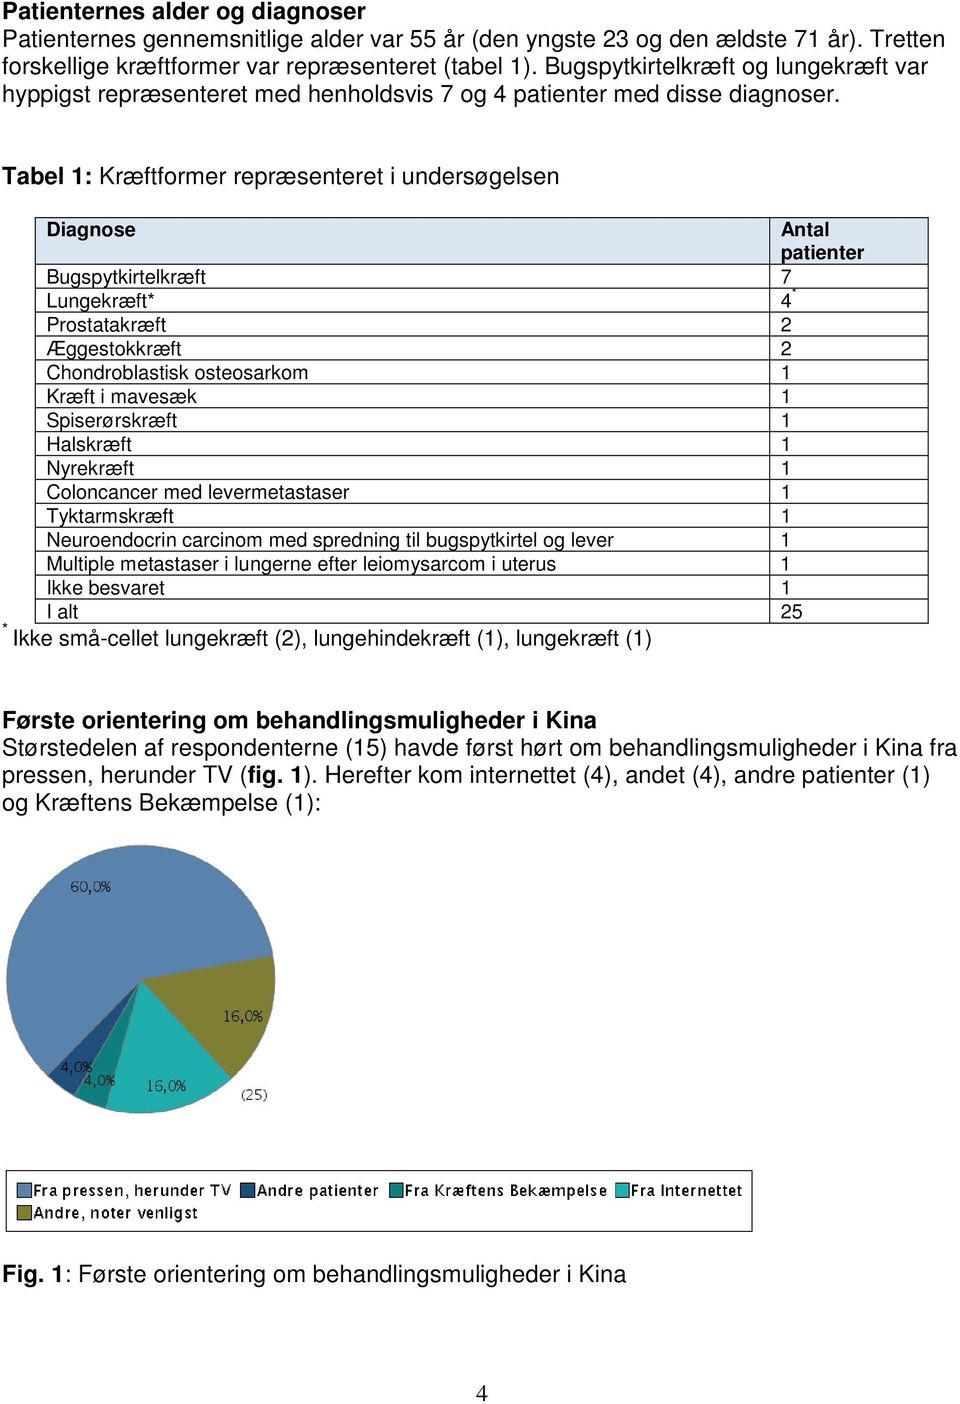 Tabel 1: Kræftformer repræsenteret i undersøgelsen Diagnose Antal patienter Bugspytkirtelkræft 7 Lungekræft* 4 * Prostatakræft 2 Æggestokkræft 2 Chondroblastisk osteosarkom 1 Kræft i mavesæk 1